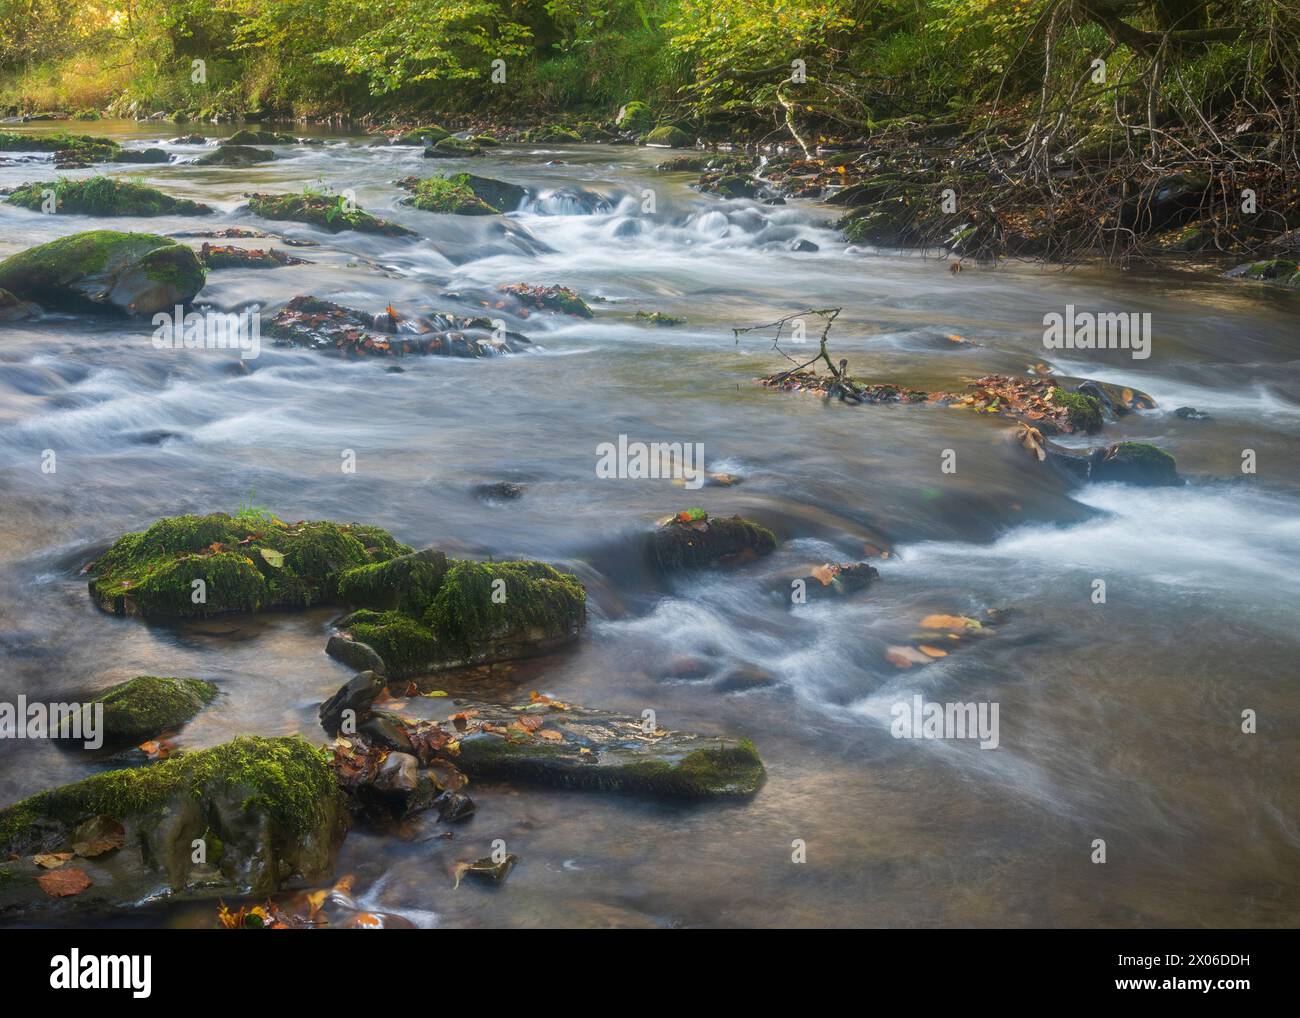 River Barle coulant sur les rochers de Shircombe Slade dans le parc national d'Exmoor, Somerset, Angleterre, Royaume-Uni. Banque D'Images